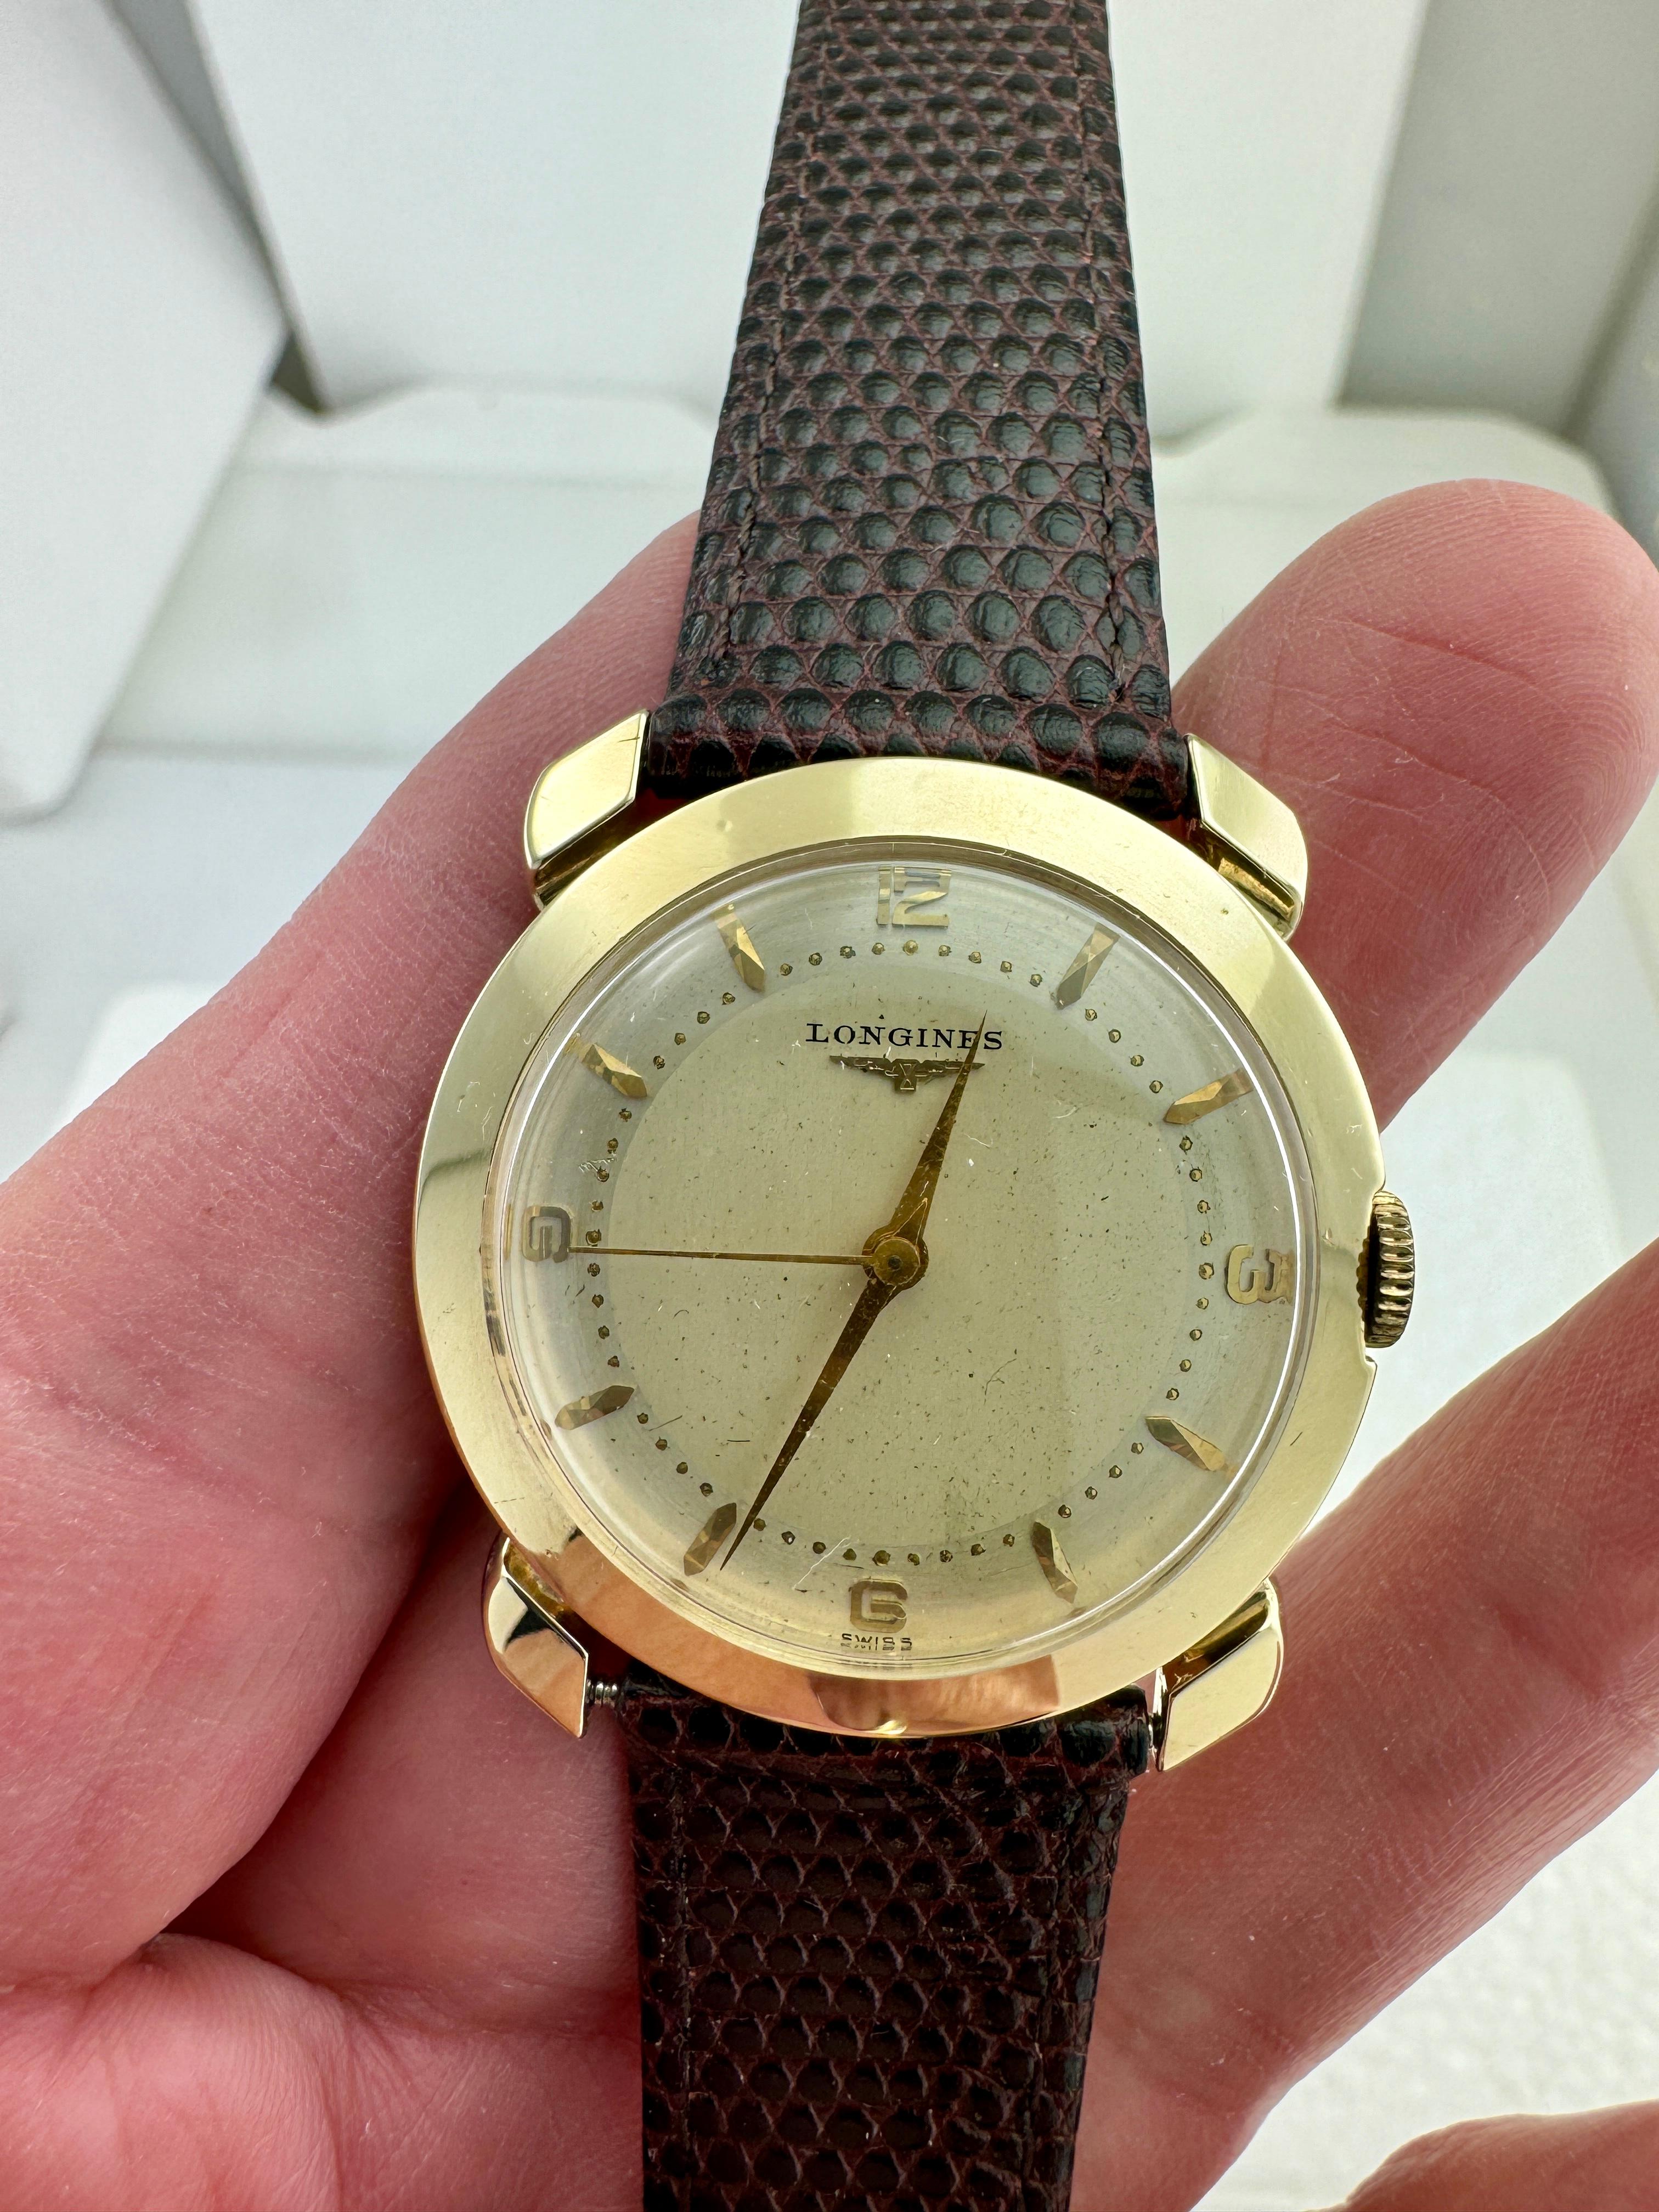 Montre-bracelet Vintage Longines en or jaune, circa 1950.

Cette montre-bracelet Longines vintage des années 1950 est dotée d'un mouvement à remontage manuel de 17 Jewell, calibre 22LS, logé dans son boîtier d'origine en or jaune 14 carats.  Le